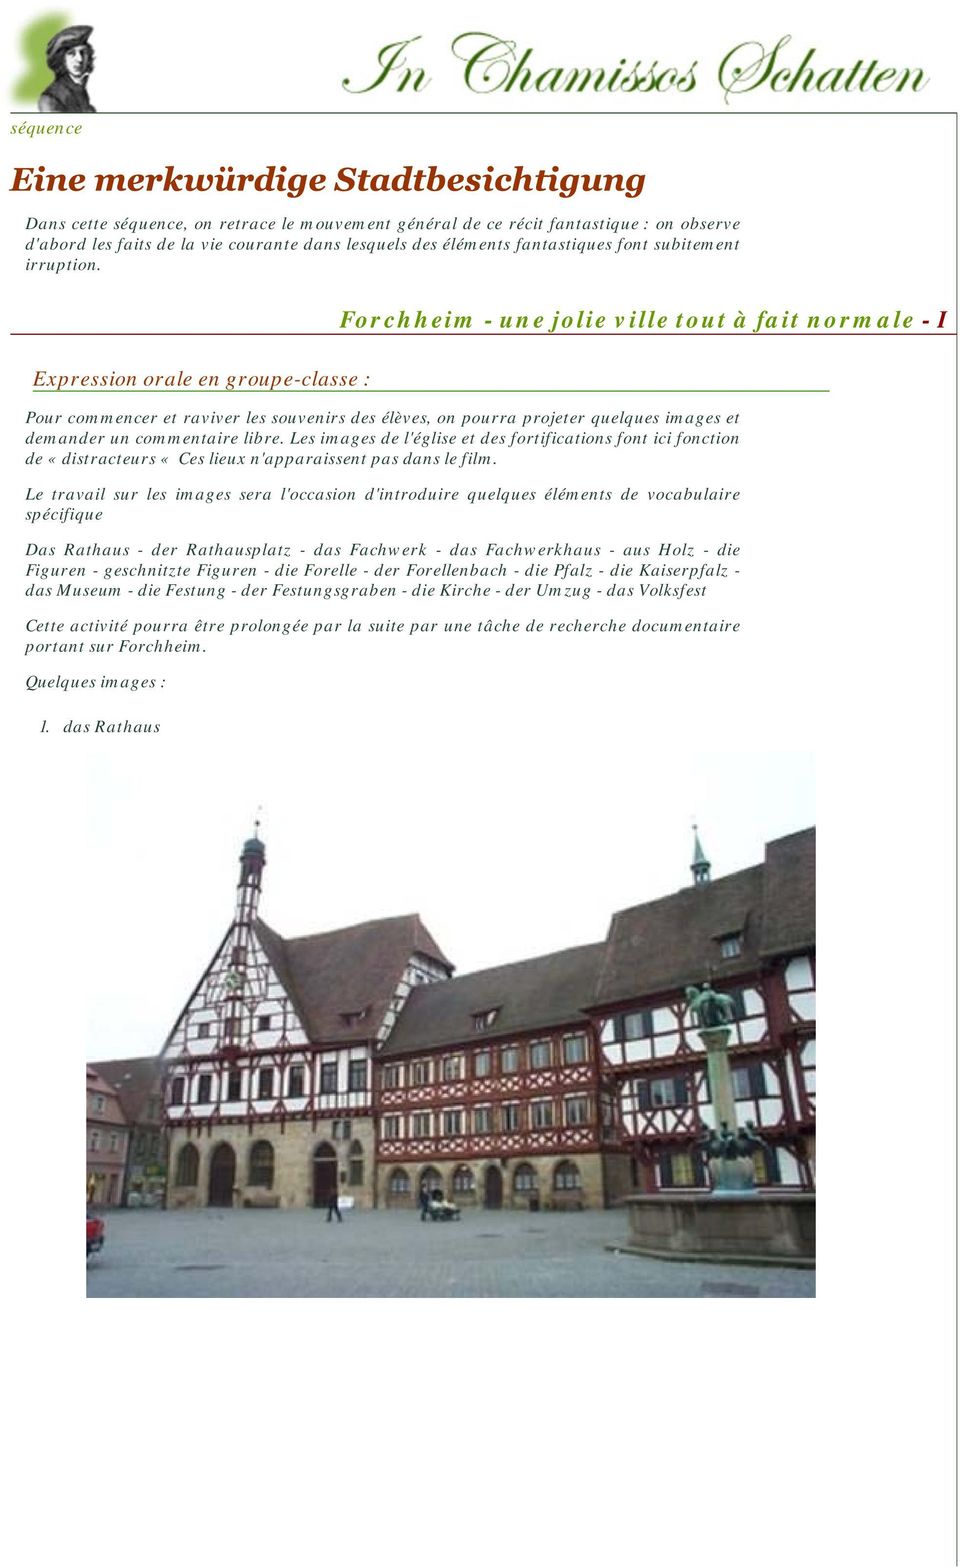 Expression orale en groupe-classe : Forchheim - une jolie ville tout à fait normale - I Pour commencer et raviver les souvenirs des élèves, on pourra projeter quelques images et demander un